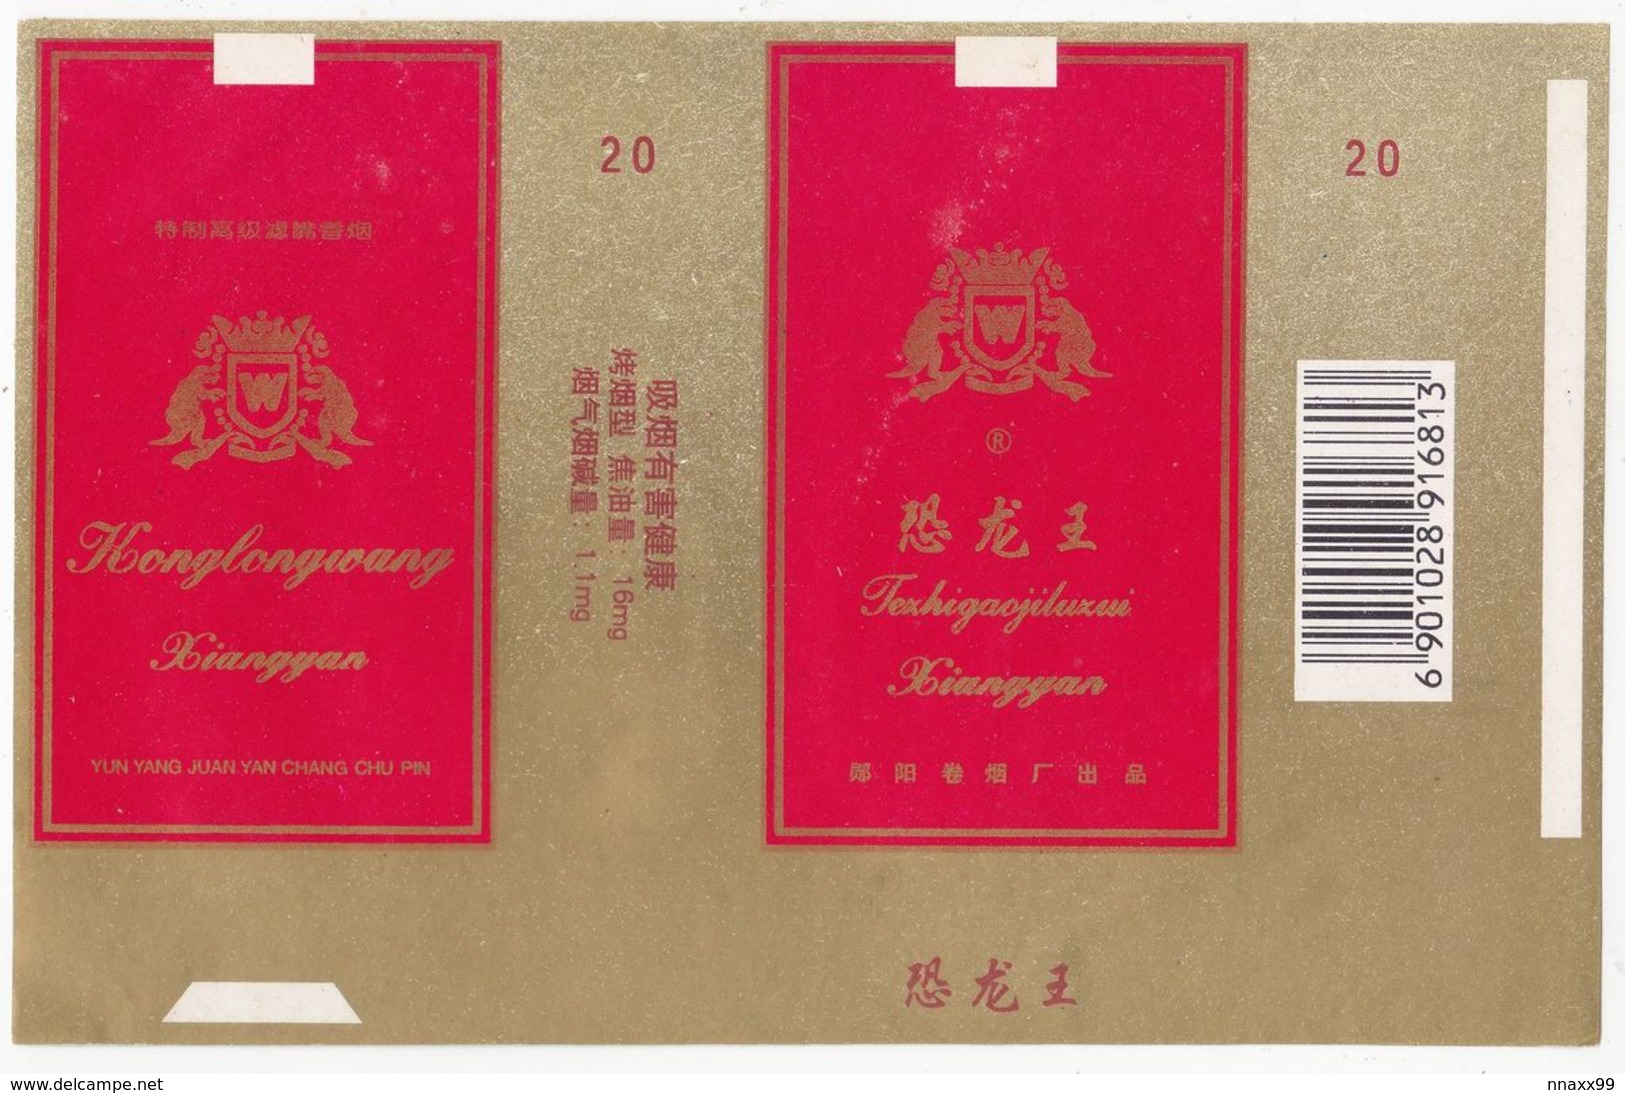 Dinosaur - Theropoda, KONGLONGWANG Cigarette Box, Soft, Gold & Red, Yunyang Cigarette Factory, Hubei, China - Porta Sigarette (vuoti)